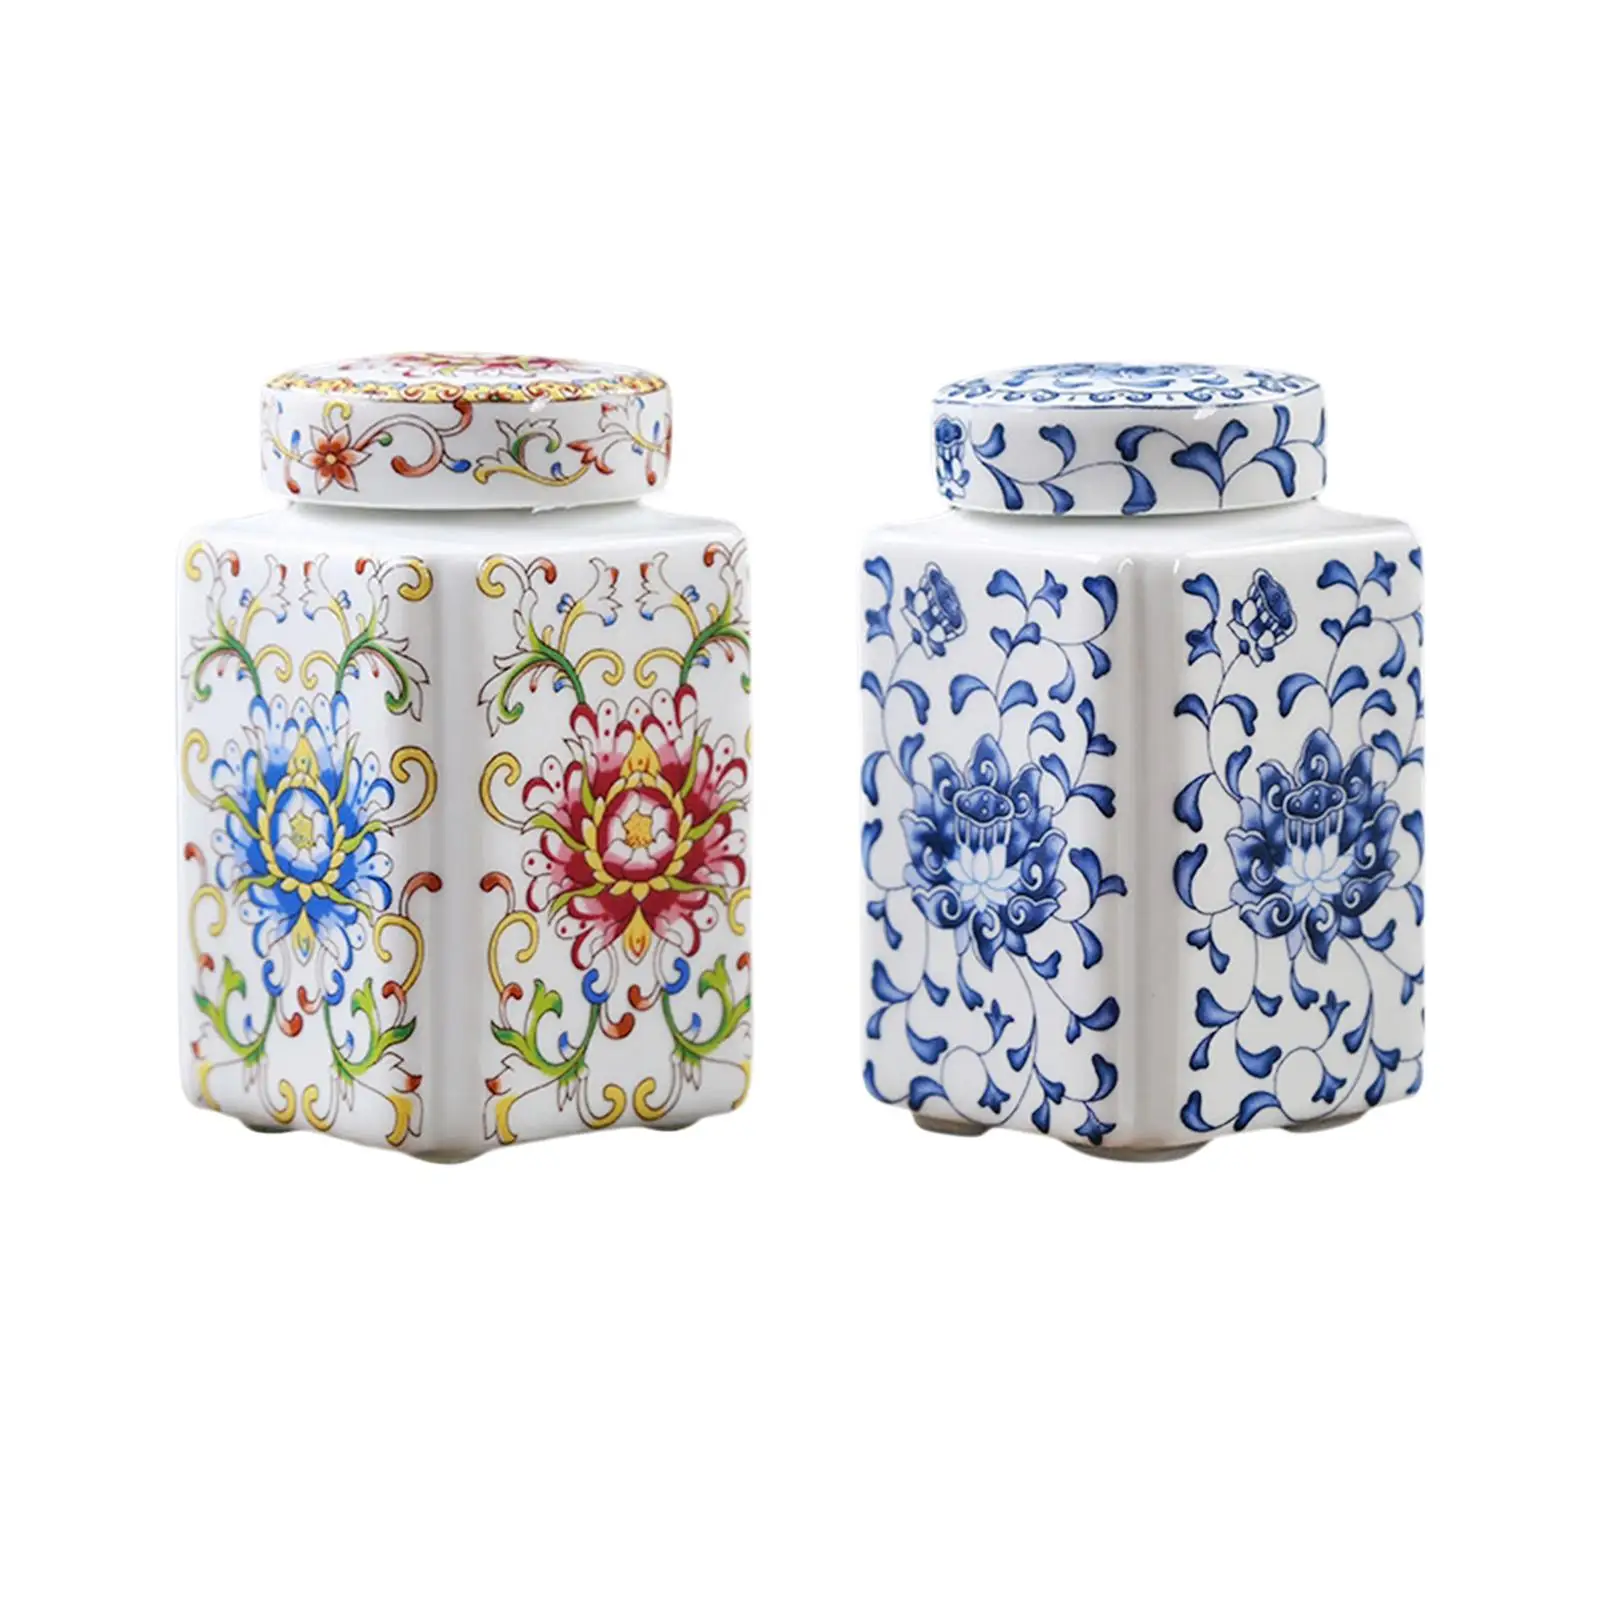 Porcelain Temple Jar Flower Vase Flower Display Organizer Tea Canister Ceramic Ginger Jar for Home Office Table Party Decor